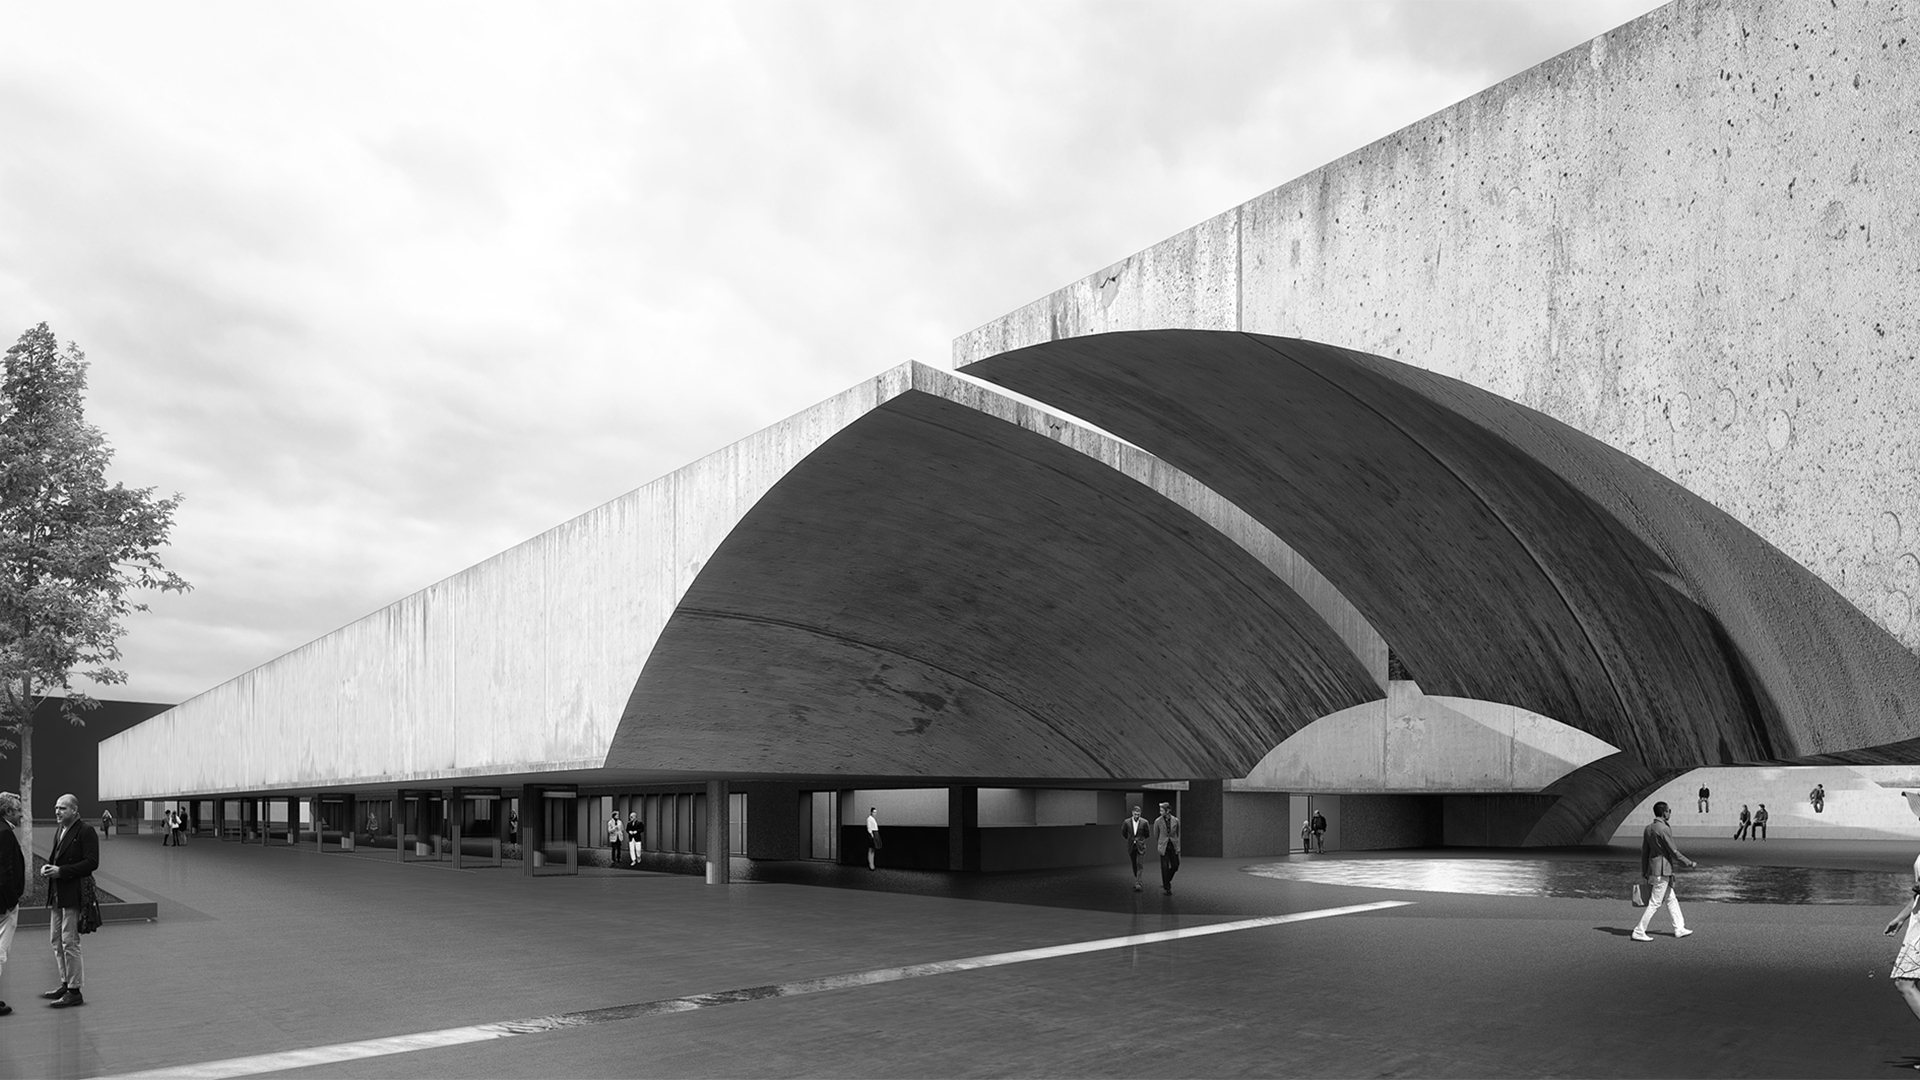 Kırşehir Planetarium - Nous Architecture | Design